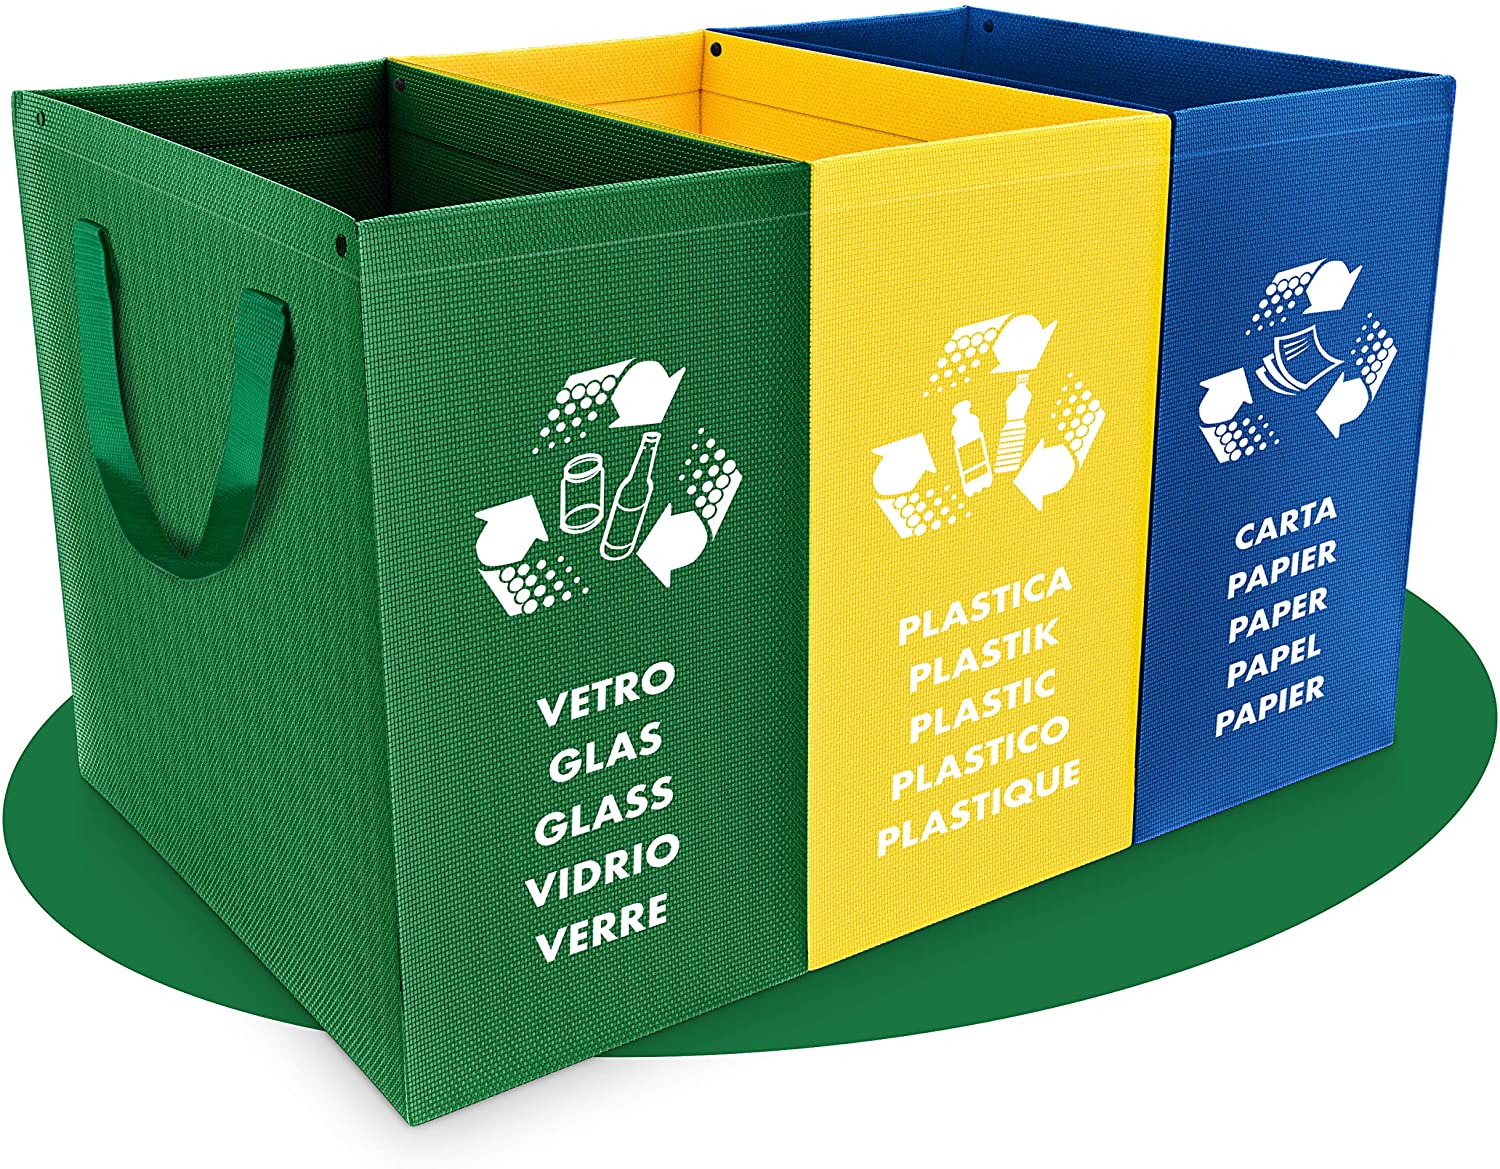 Uniformità di colore per i contenitori della raccolta rifiuti